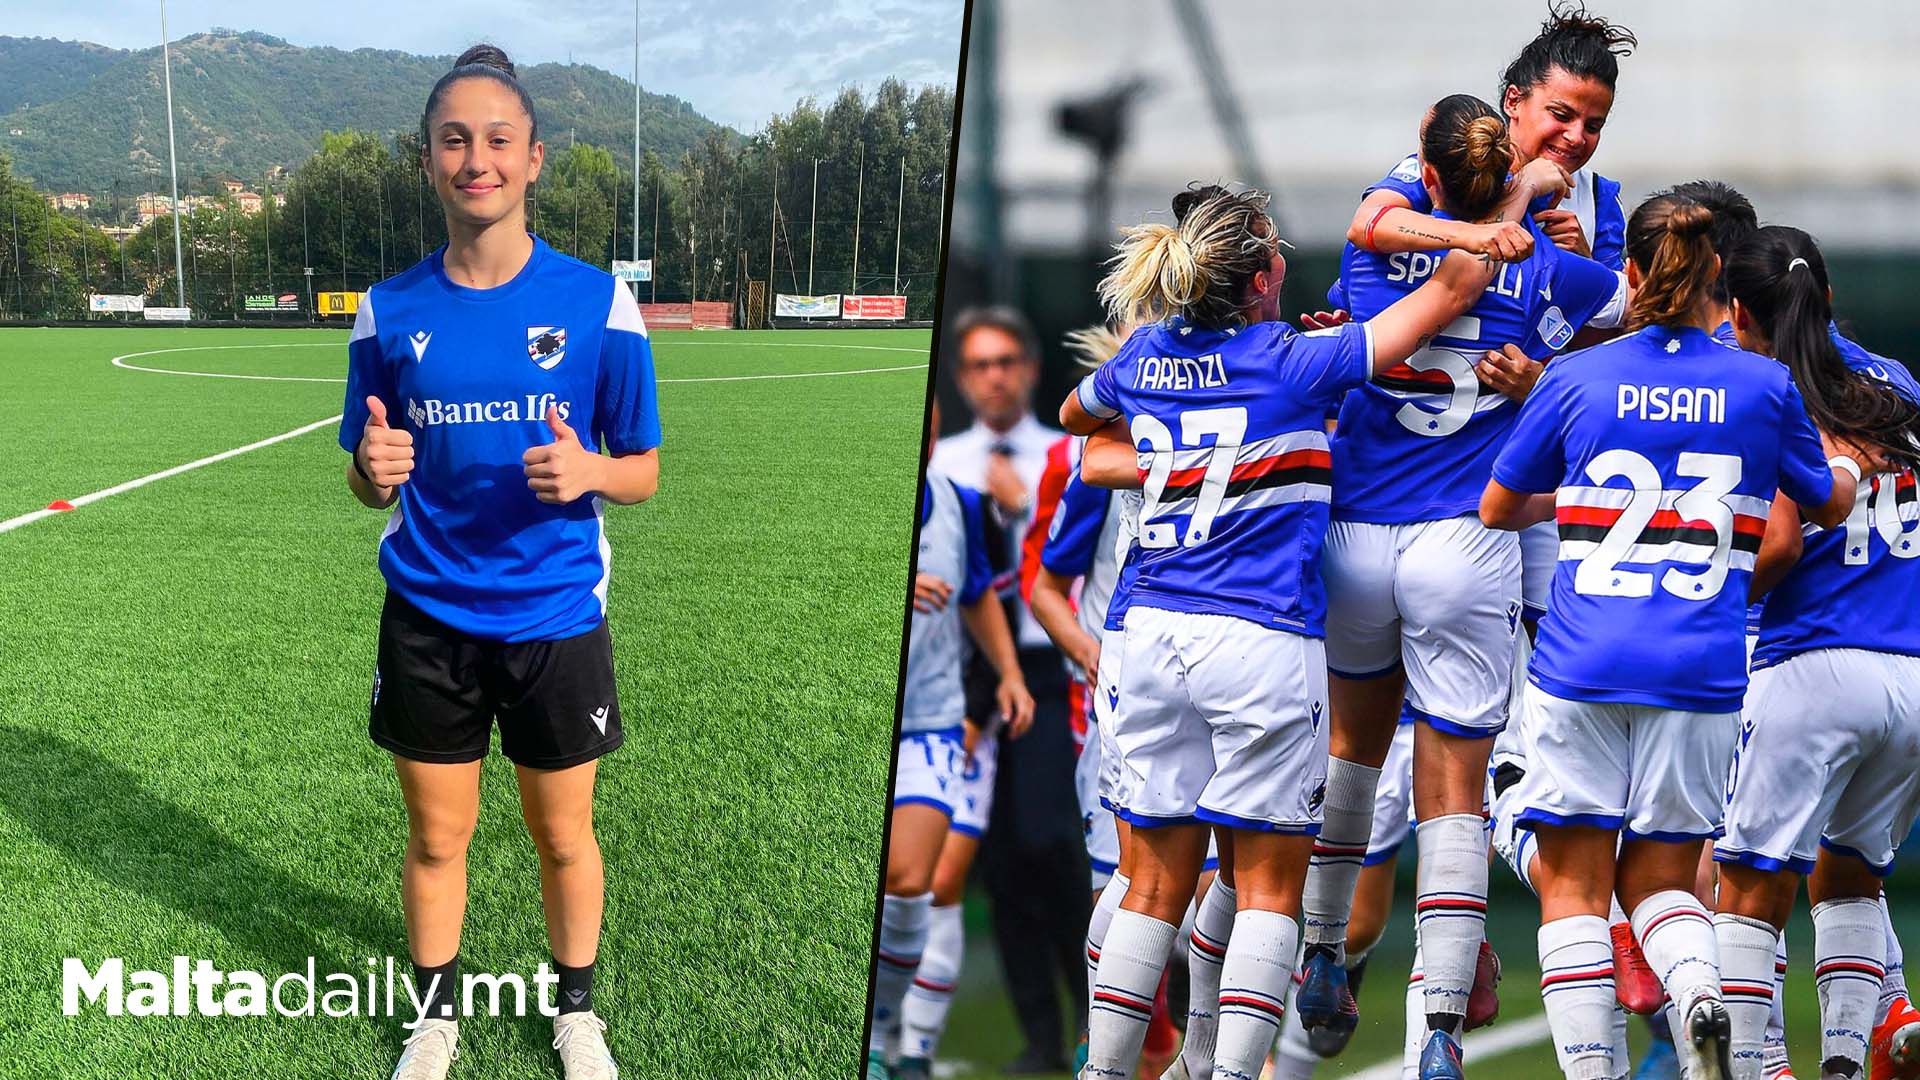 Maltese Footballer Joins Sampdoria Women's Team